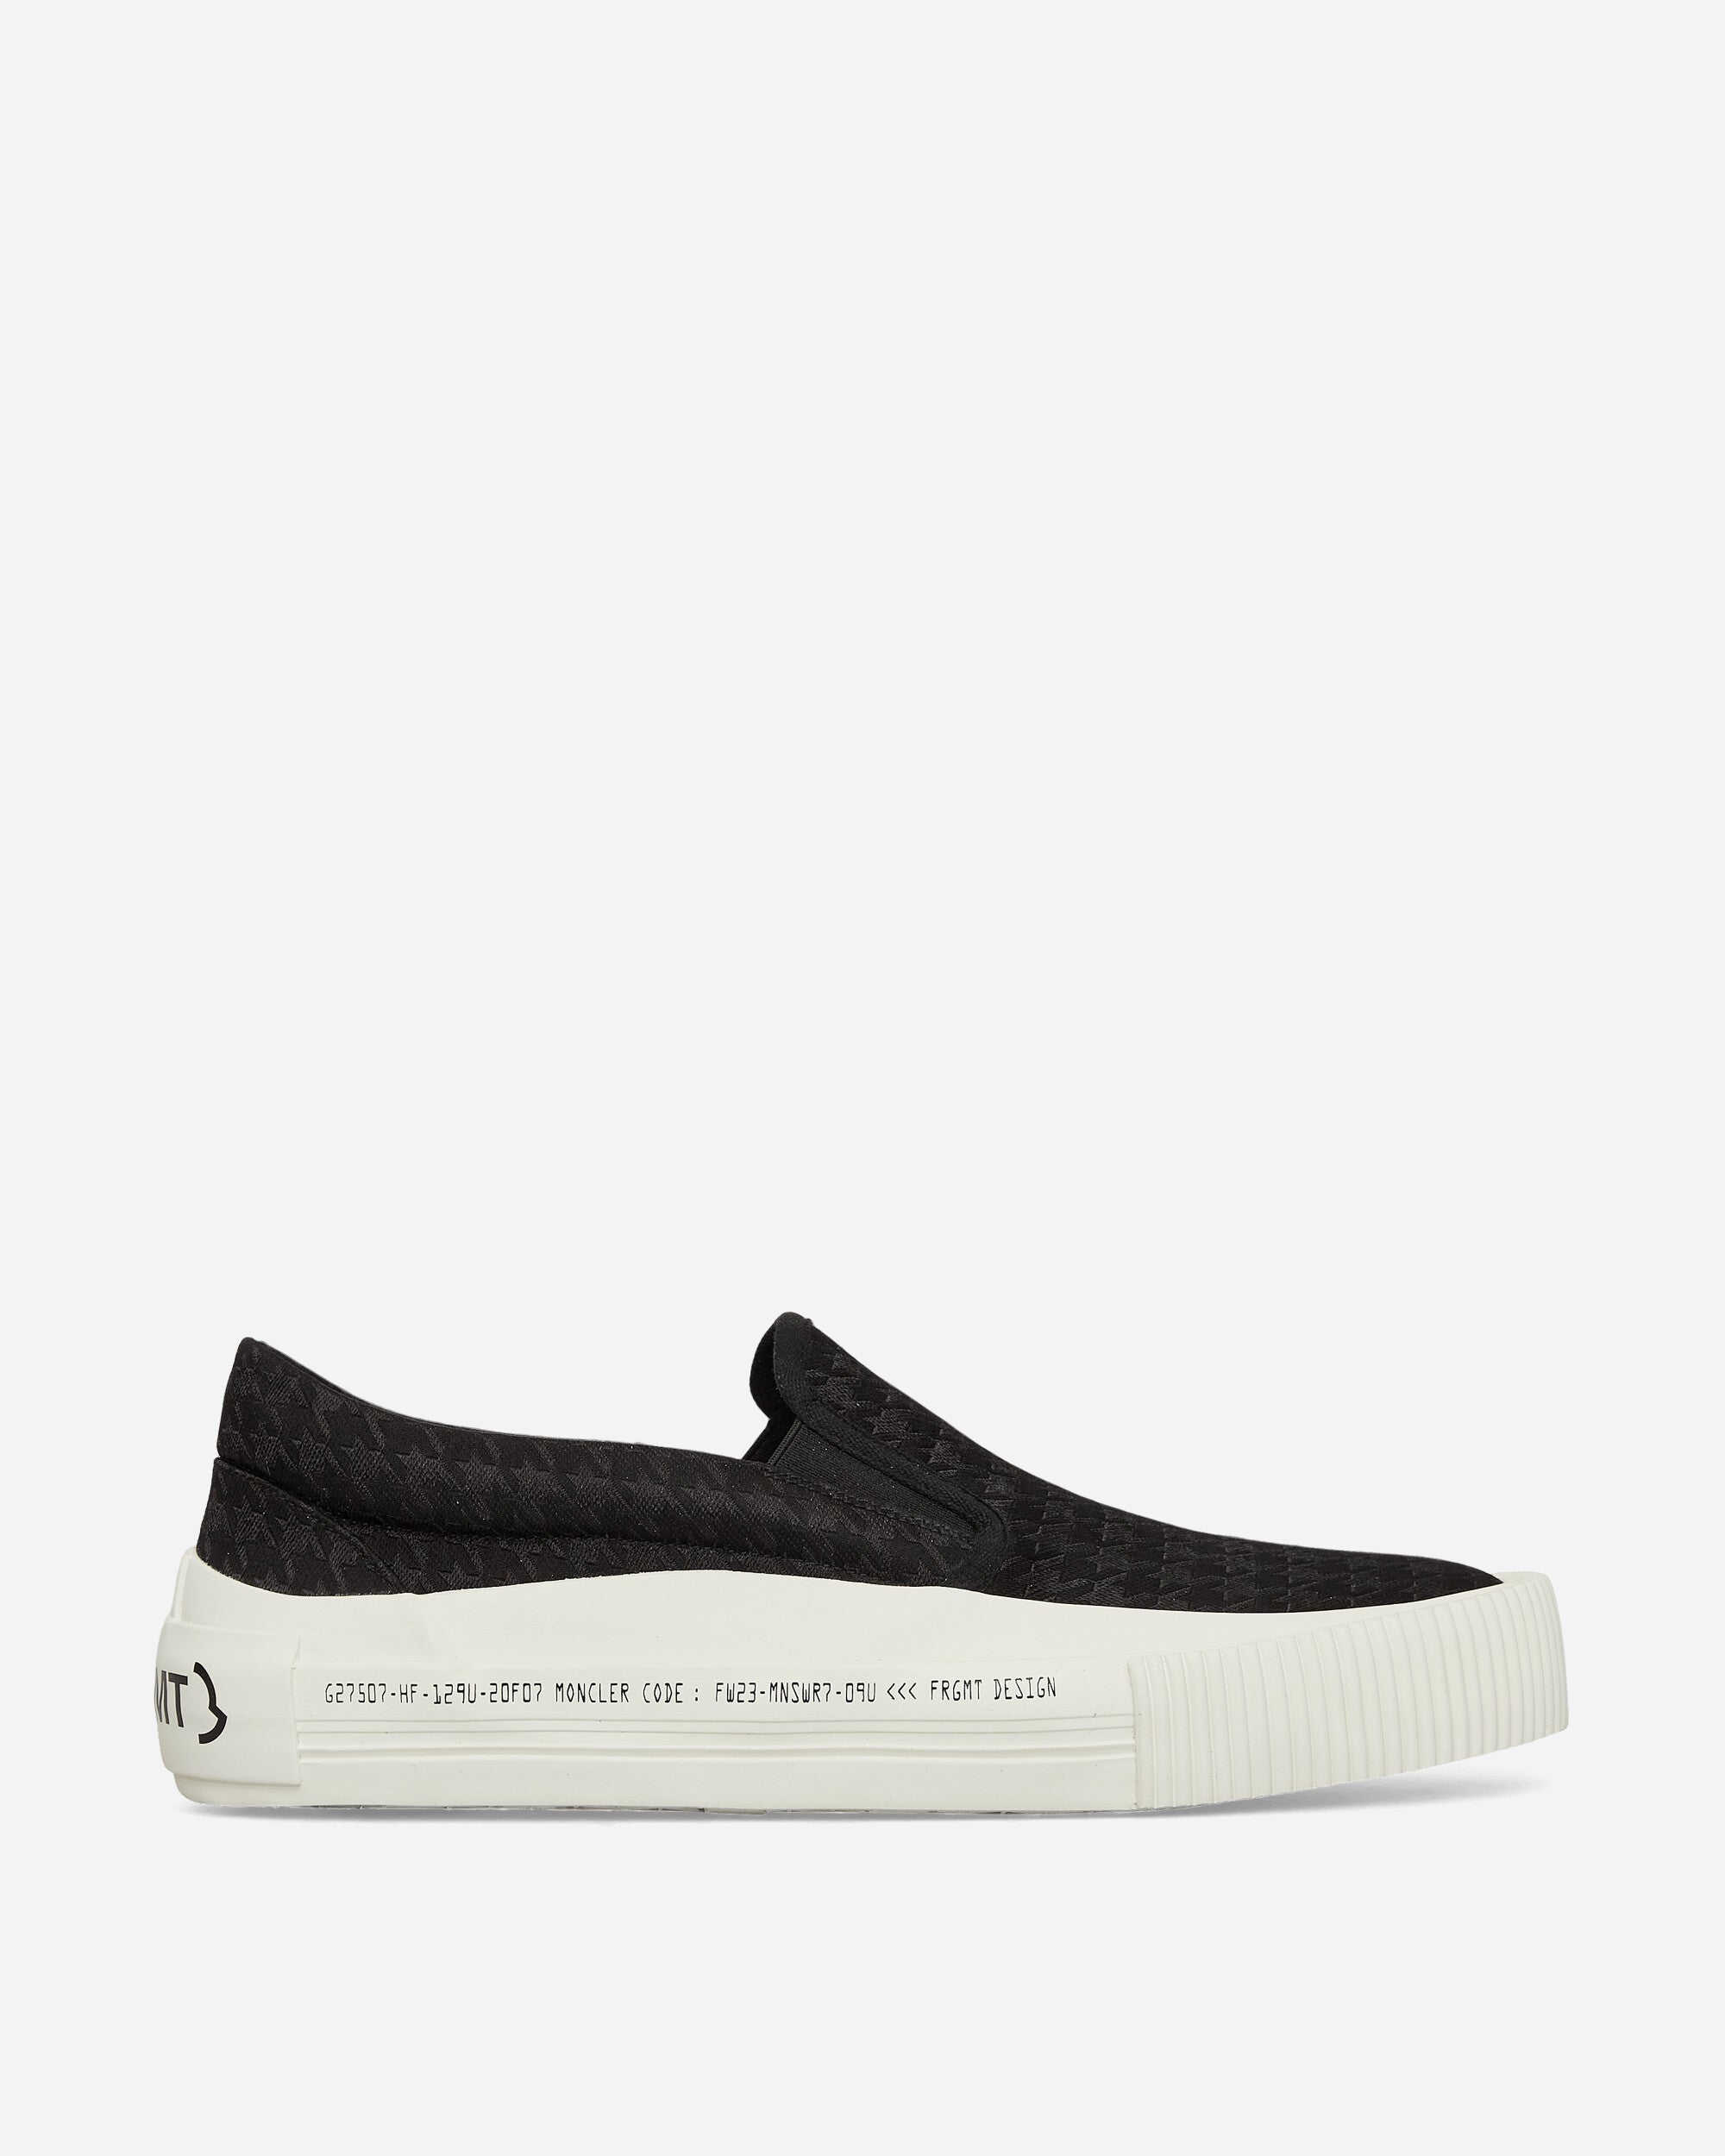 Moncler Genius Vulcan Slip-On X Fragment Black/White Sneakers Slip-On 4B00010M3233 P99